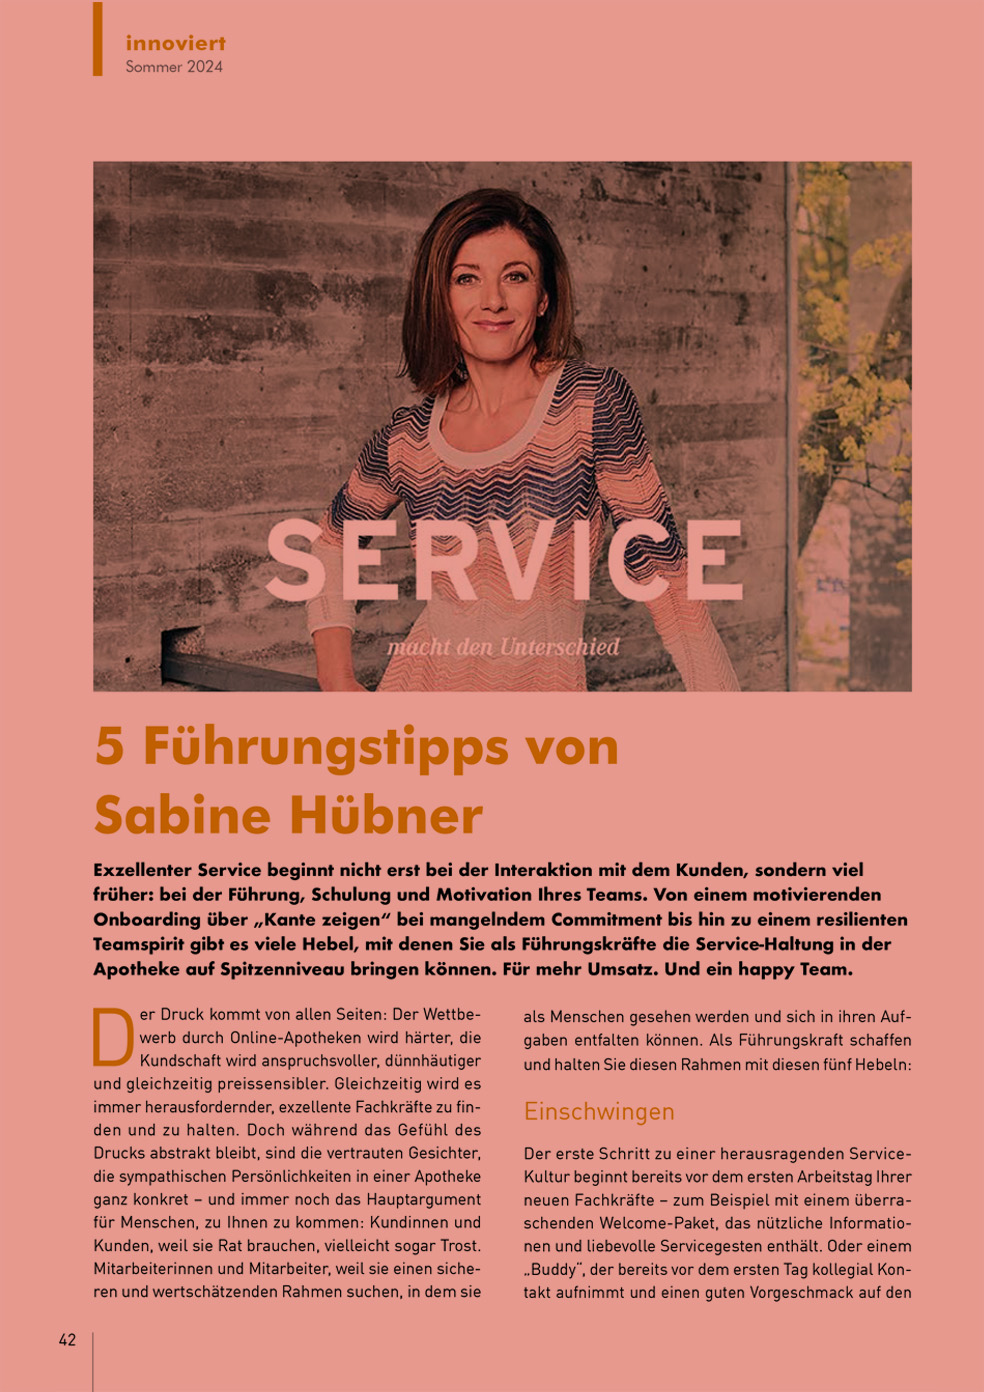 5 Führungstipps von Sabine Hübner - Phoenix Print